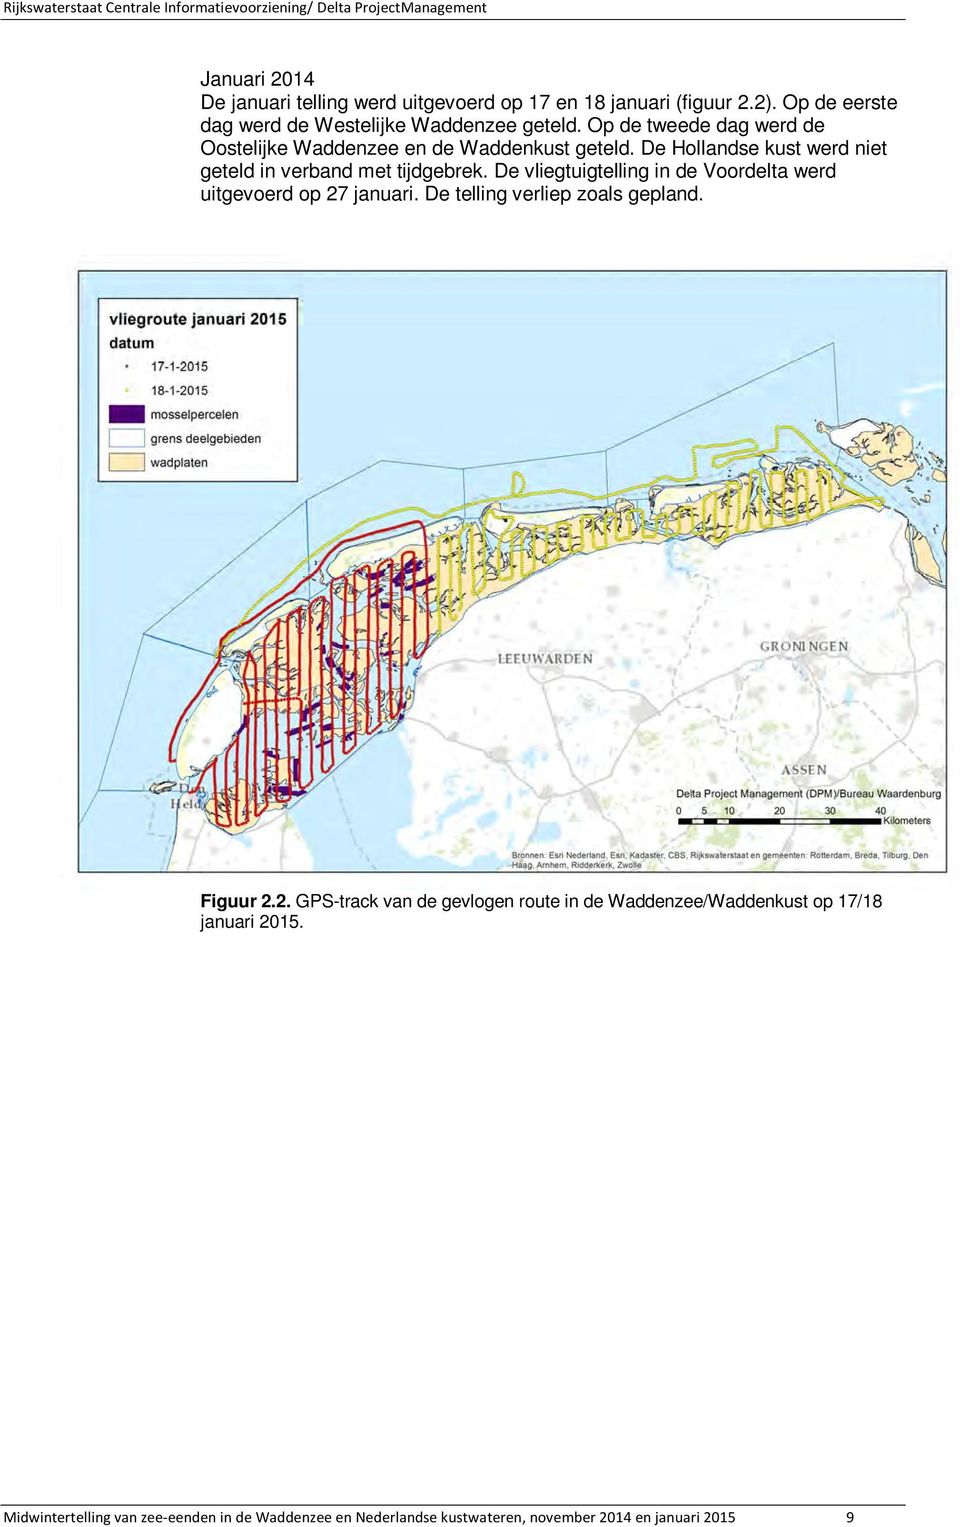 De vliegtuigtelling in de Voordelta werd uitgevoerd op 27 januari. De telling verliep zoals gepland. Figuur 2.2. GPS-track van de gevlogen route in de Waddenzee/Waddenkust op 17/18 januari 2015.